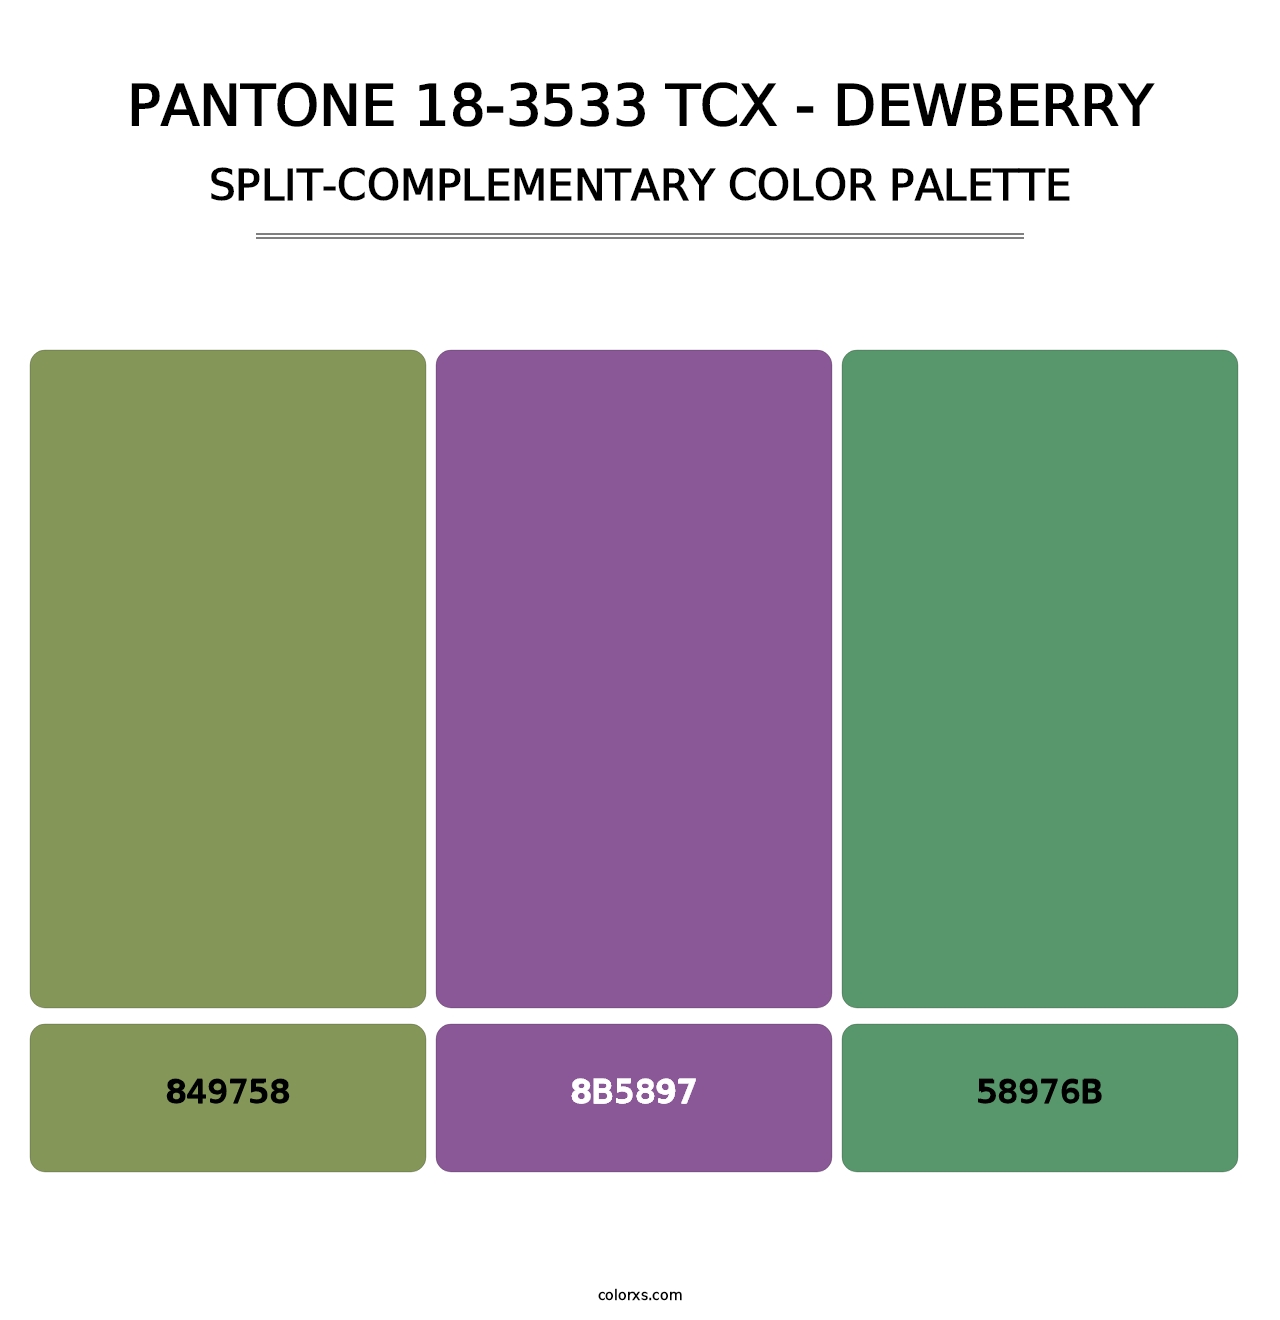 PANTONE 18-3533 TCX - Dewberry - Split-Complementary Color Palette